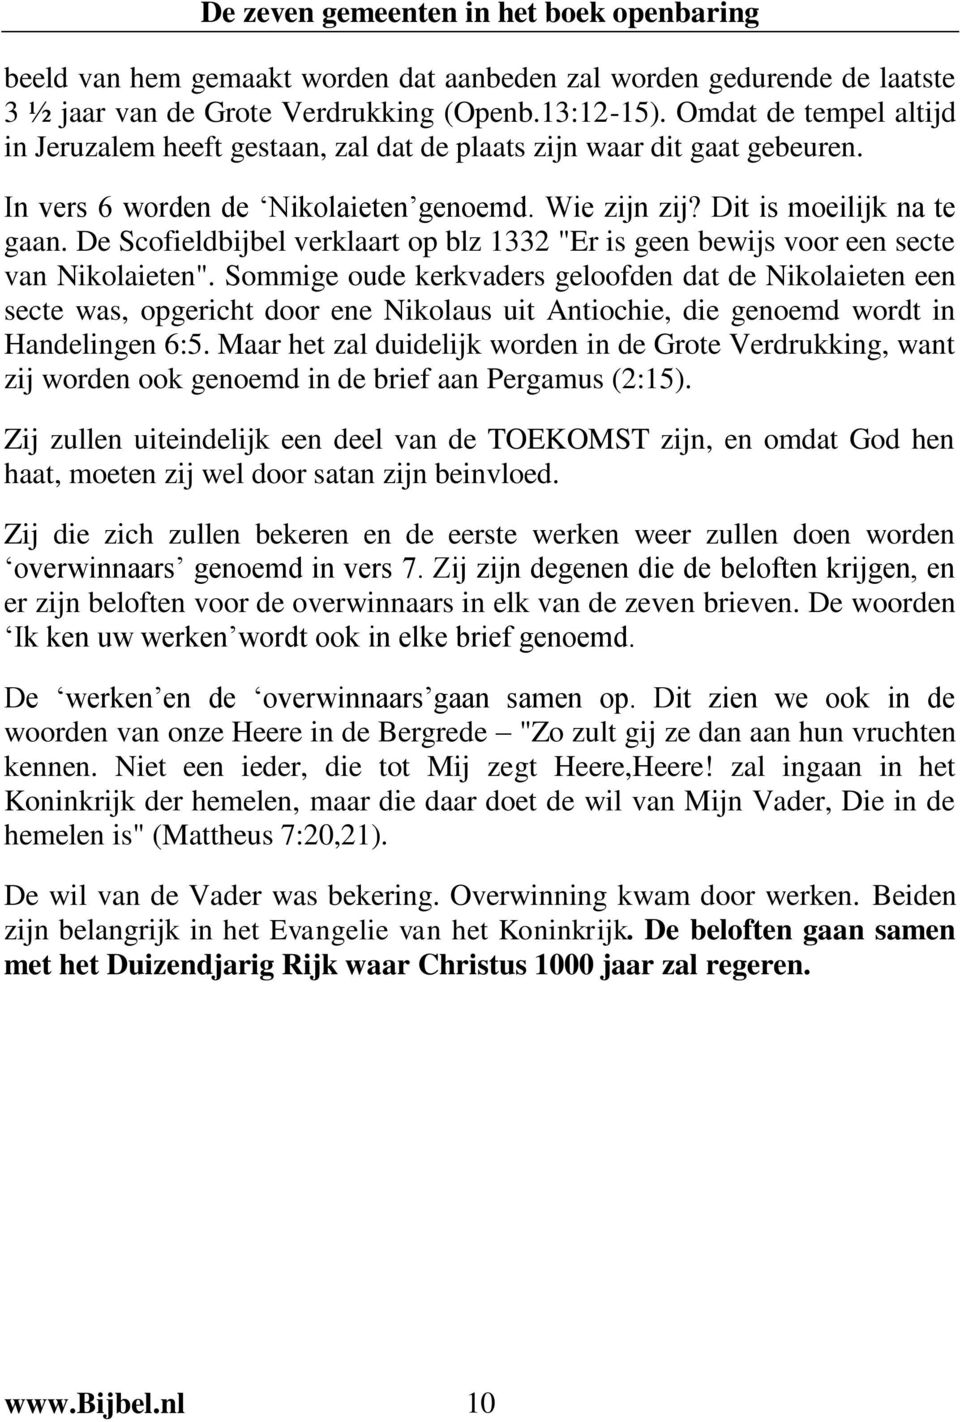 De Scofieldbijbel verklaart op blz 1332 "Er is geen bewijs voor een secte van Nikolaieten".